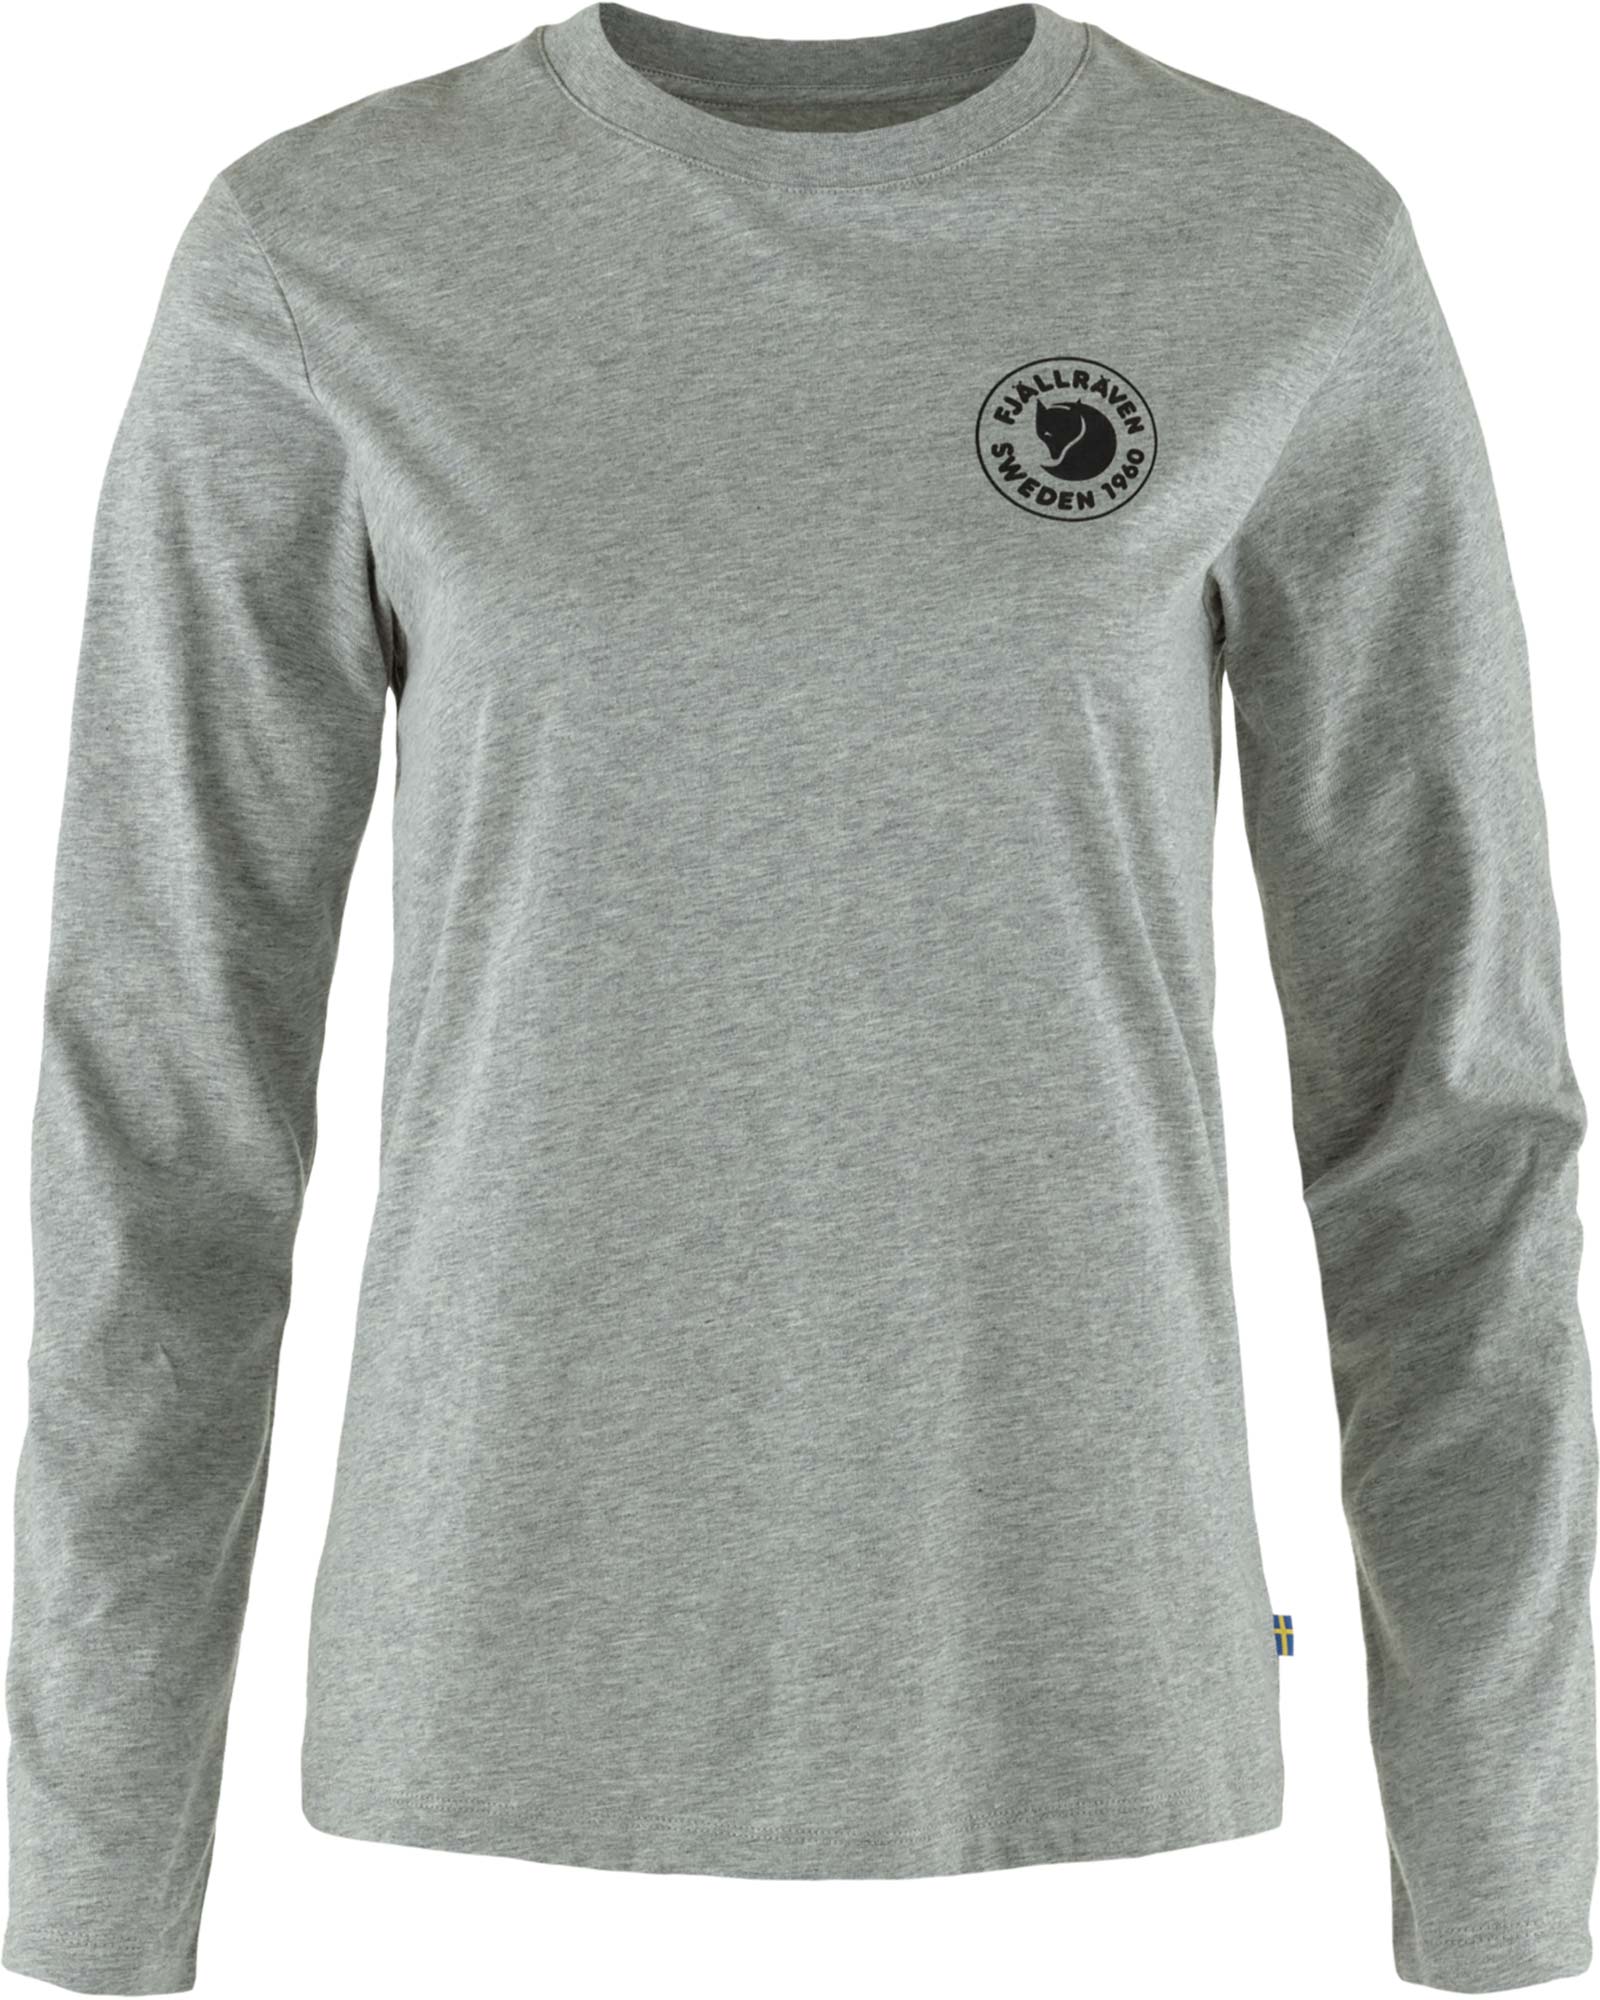 Fjallraven Women’s 1960 Logo Long Sleeved T Shirt - Grey Melange S